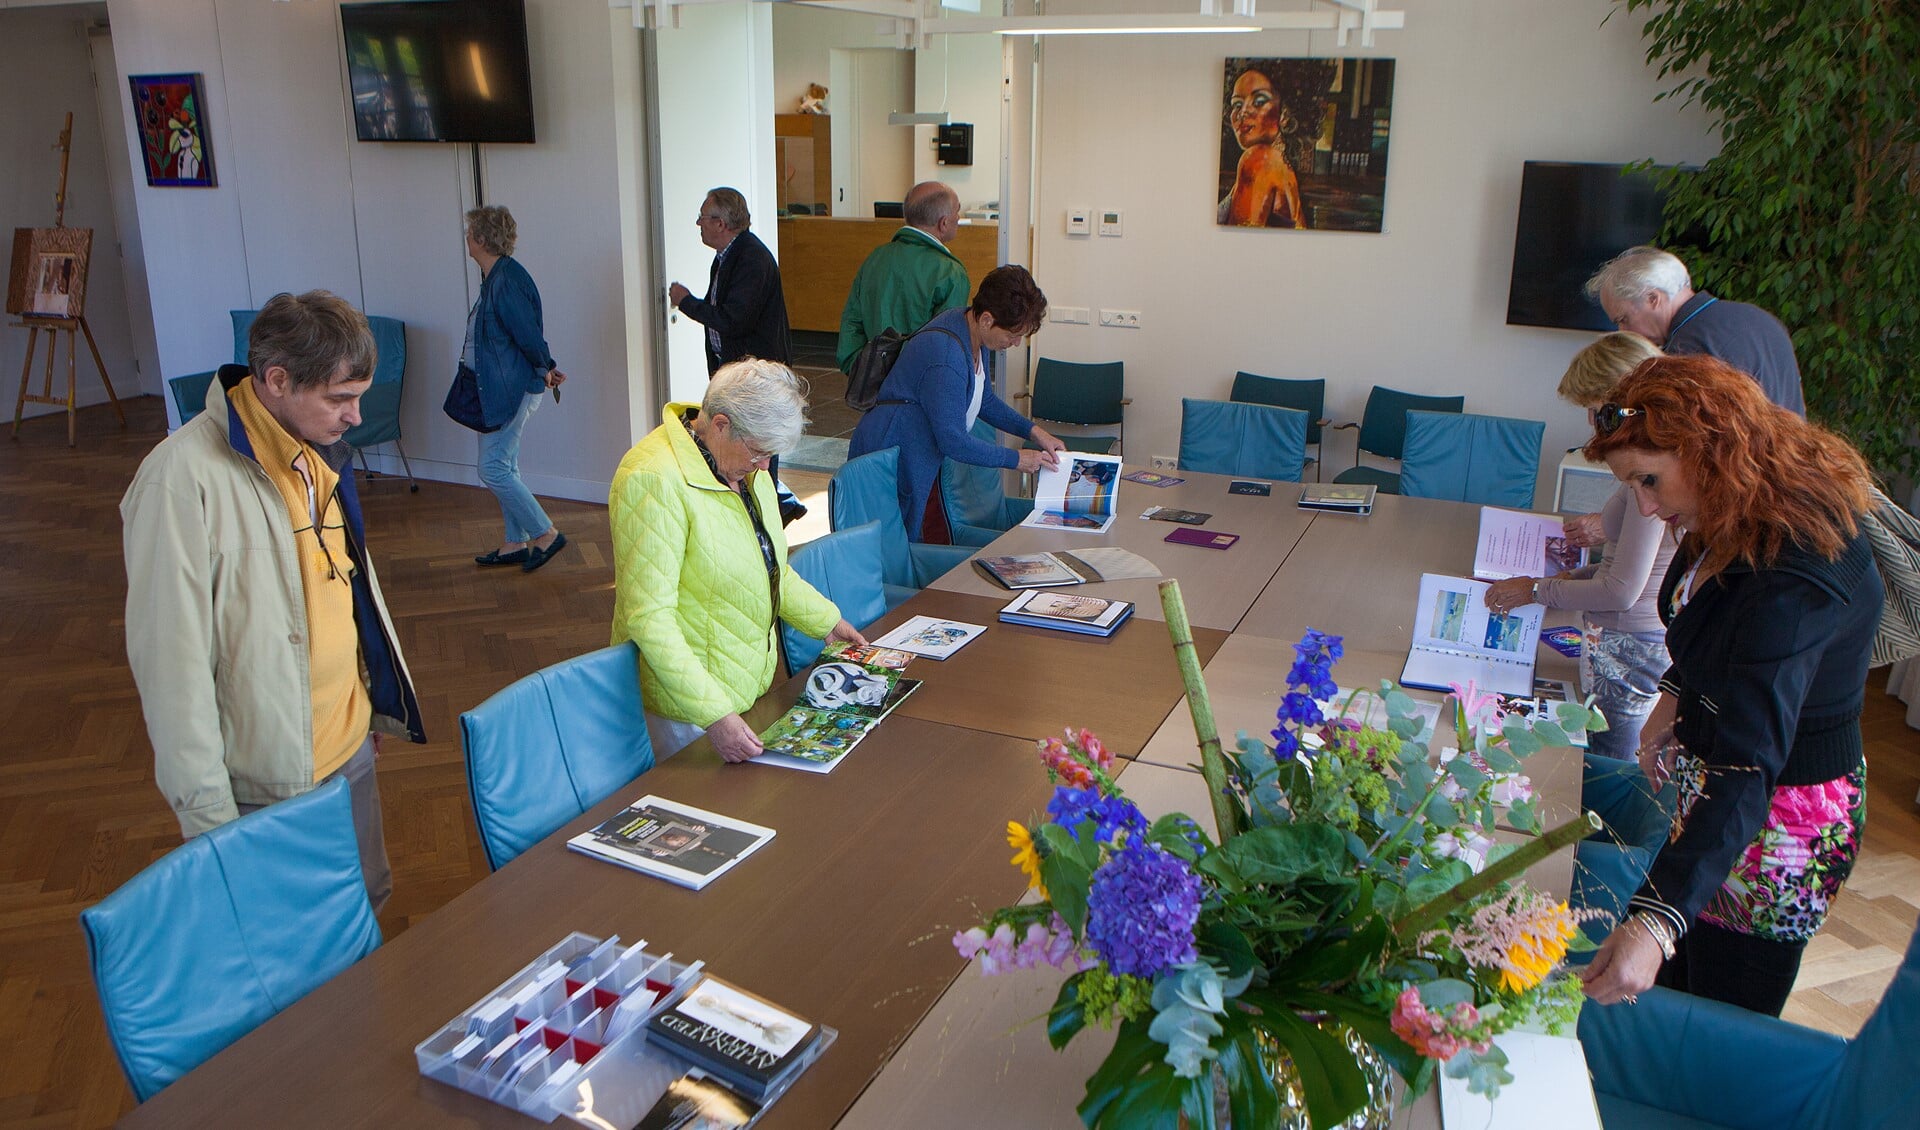 Op het gemeentehuis aan de Kerklaan is een overzichtstentoonstelling van alle deelnemende kunstenaars.